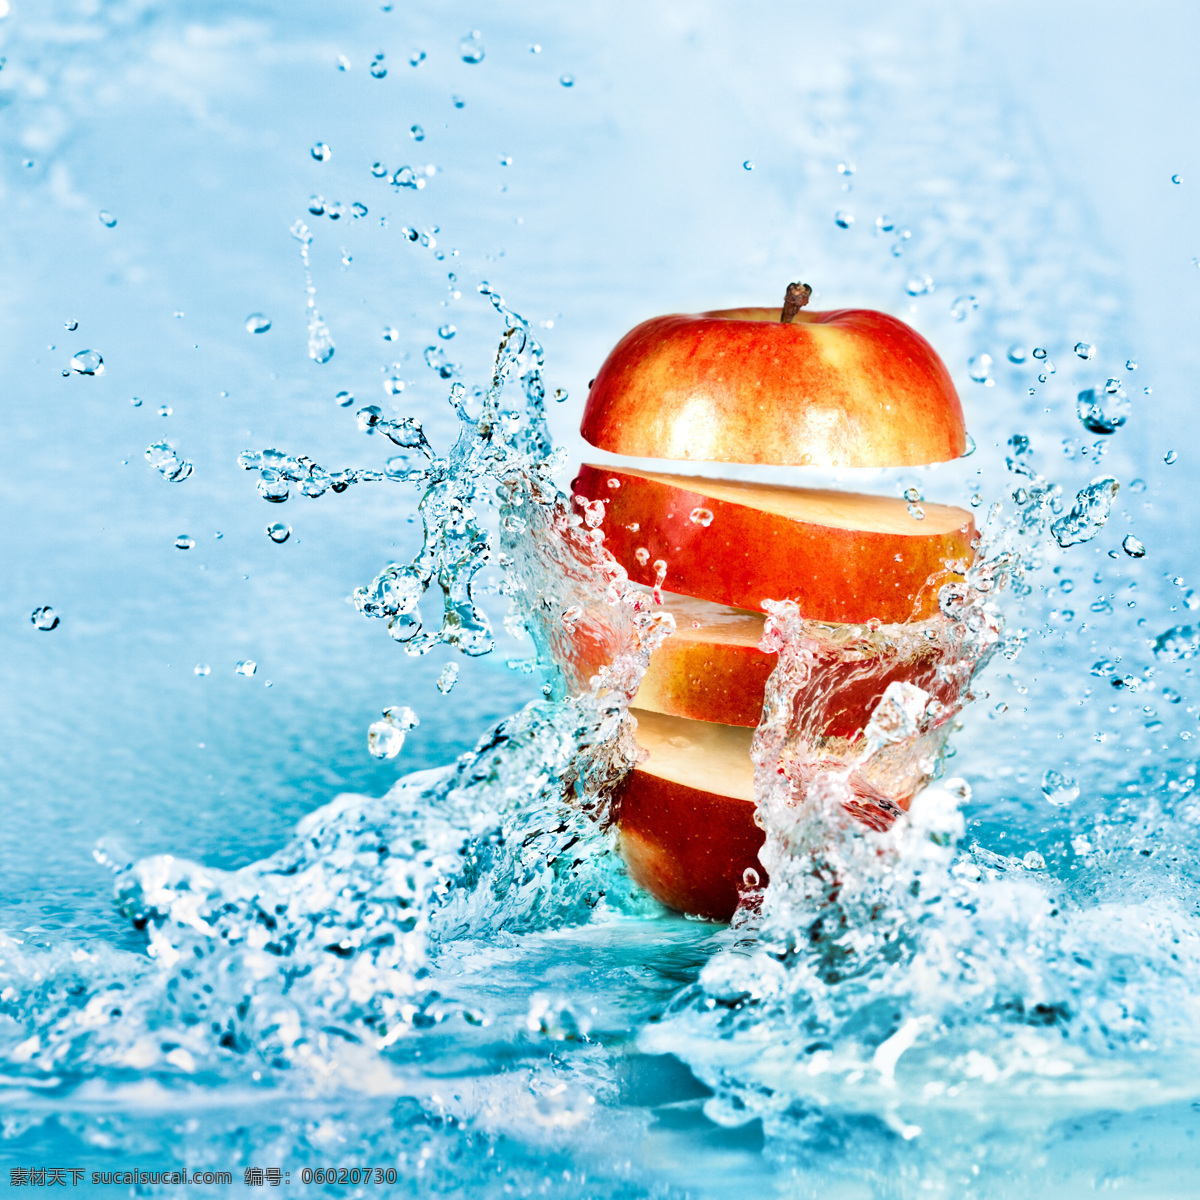 溅 水花 苹果 甜美水果 高清图片 jpg图库 水果 水果素材 健康水果 新鲜水果 水果高清 红色 溅起的水花 水 水与苹果 切开的苹果 苹果图片 餐饮美食